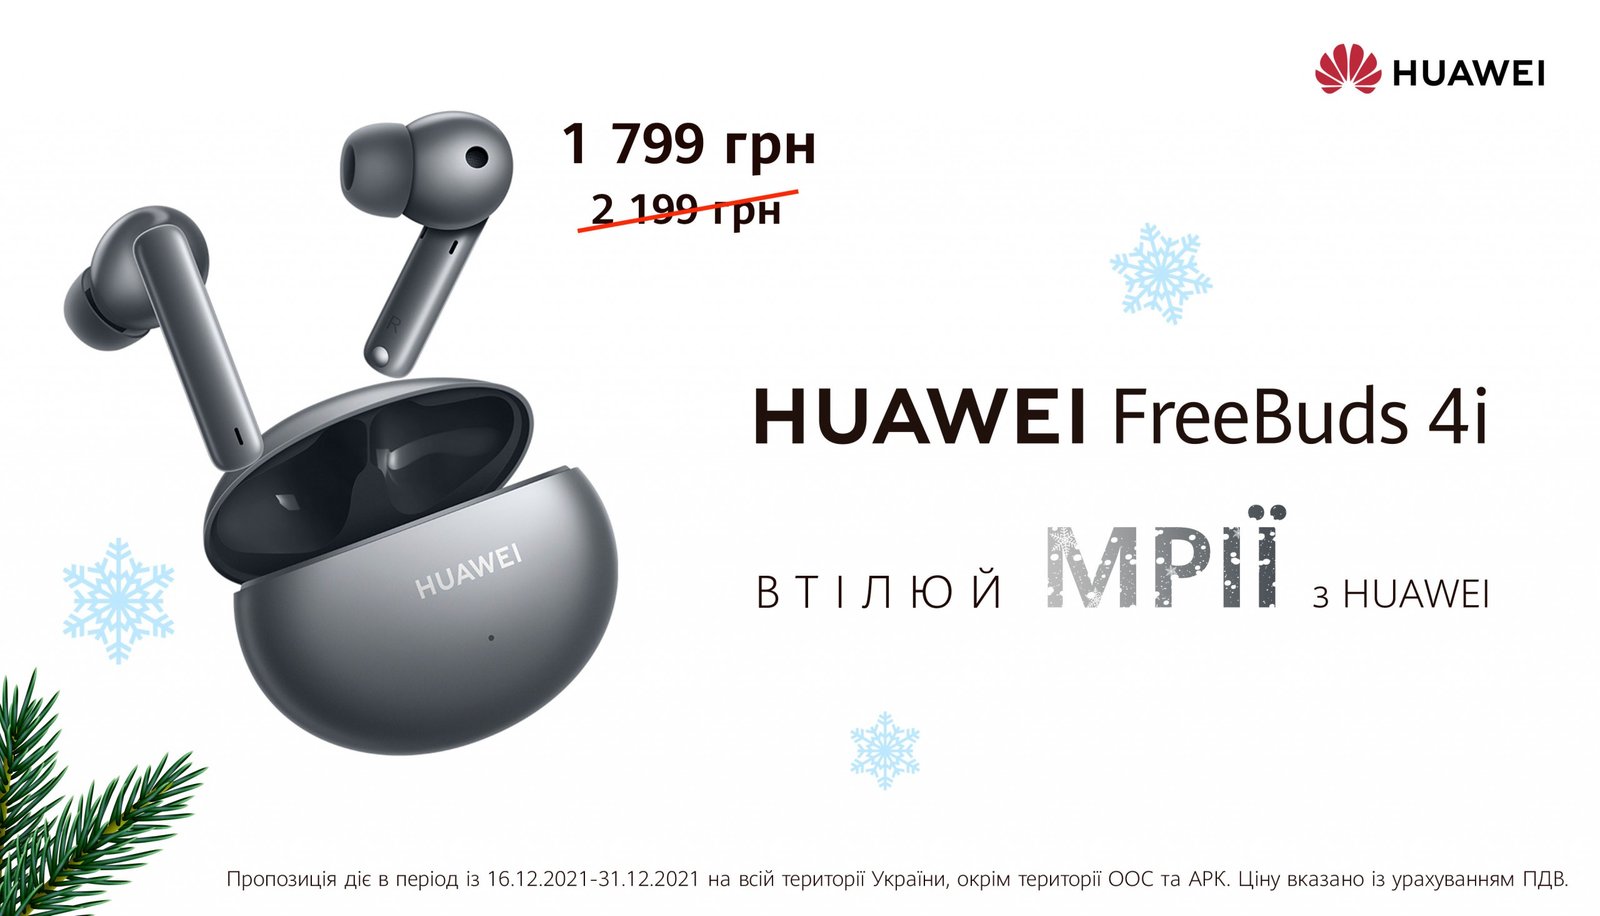 Спеціальні ціни Huawei до Нового року: знижки на гаджети до 31 грудня